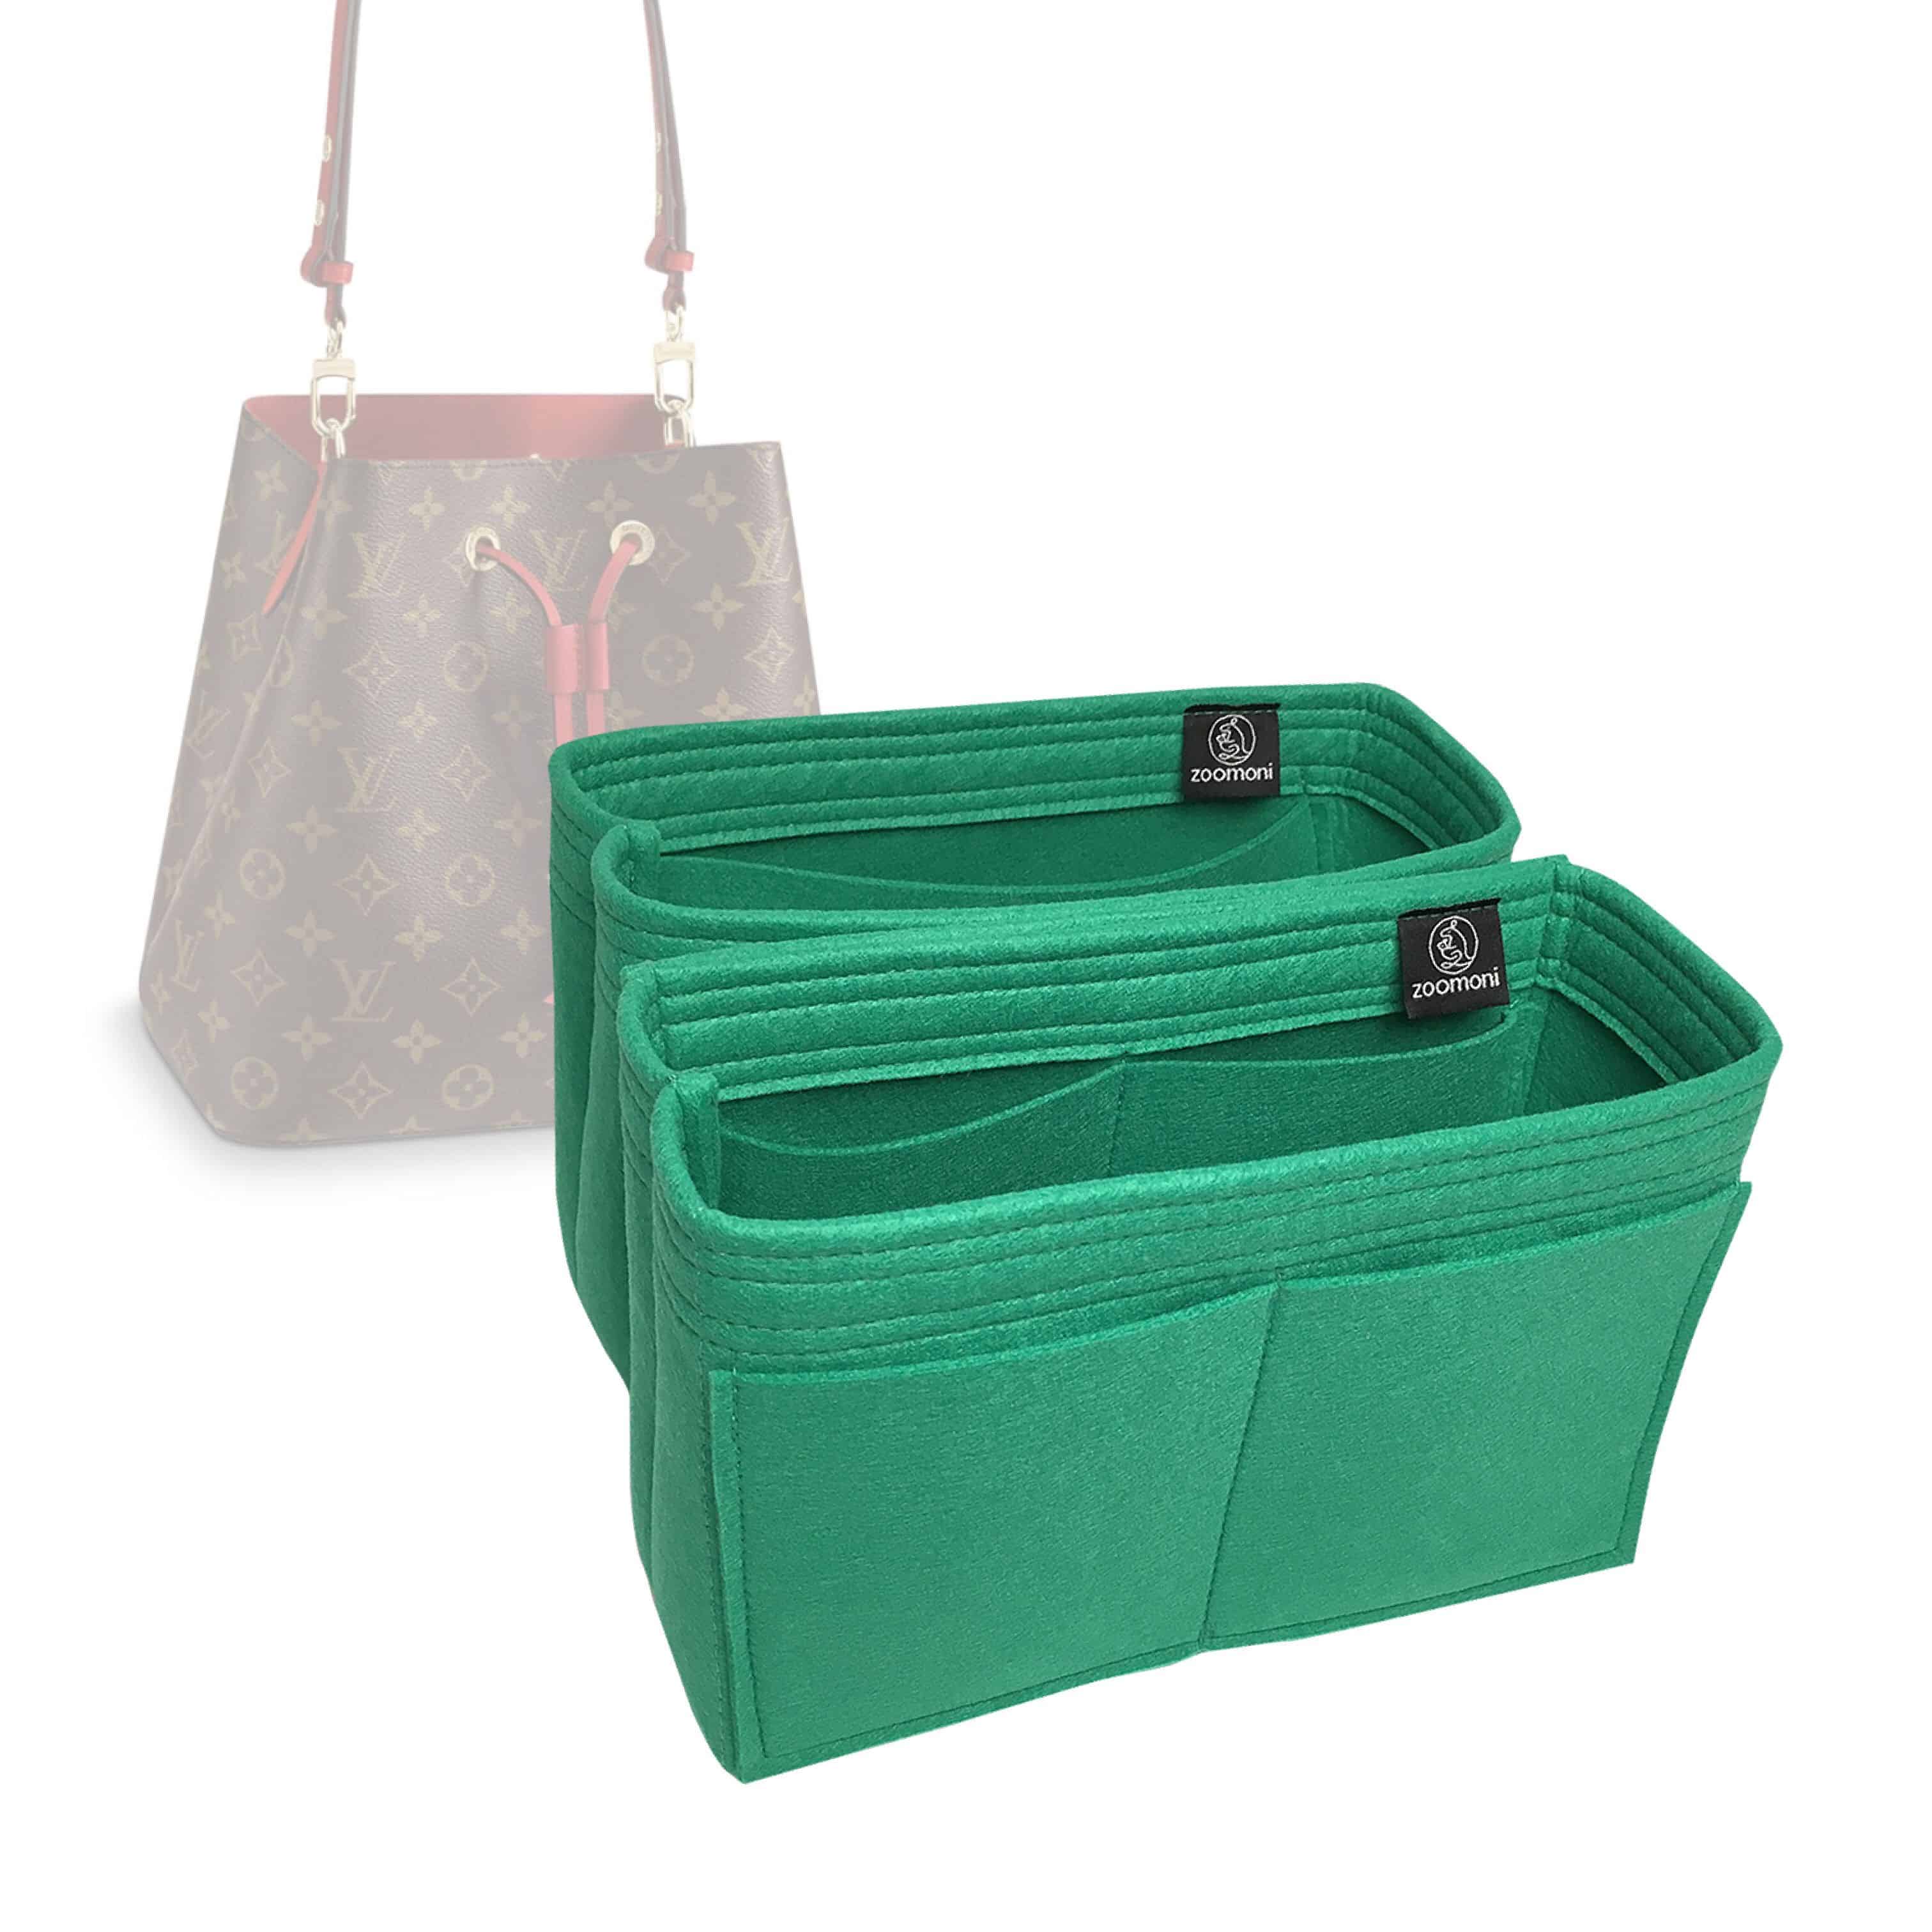 Bag Organizer for Louis Vuitton Caissa Hobo - Seafoam Green